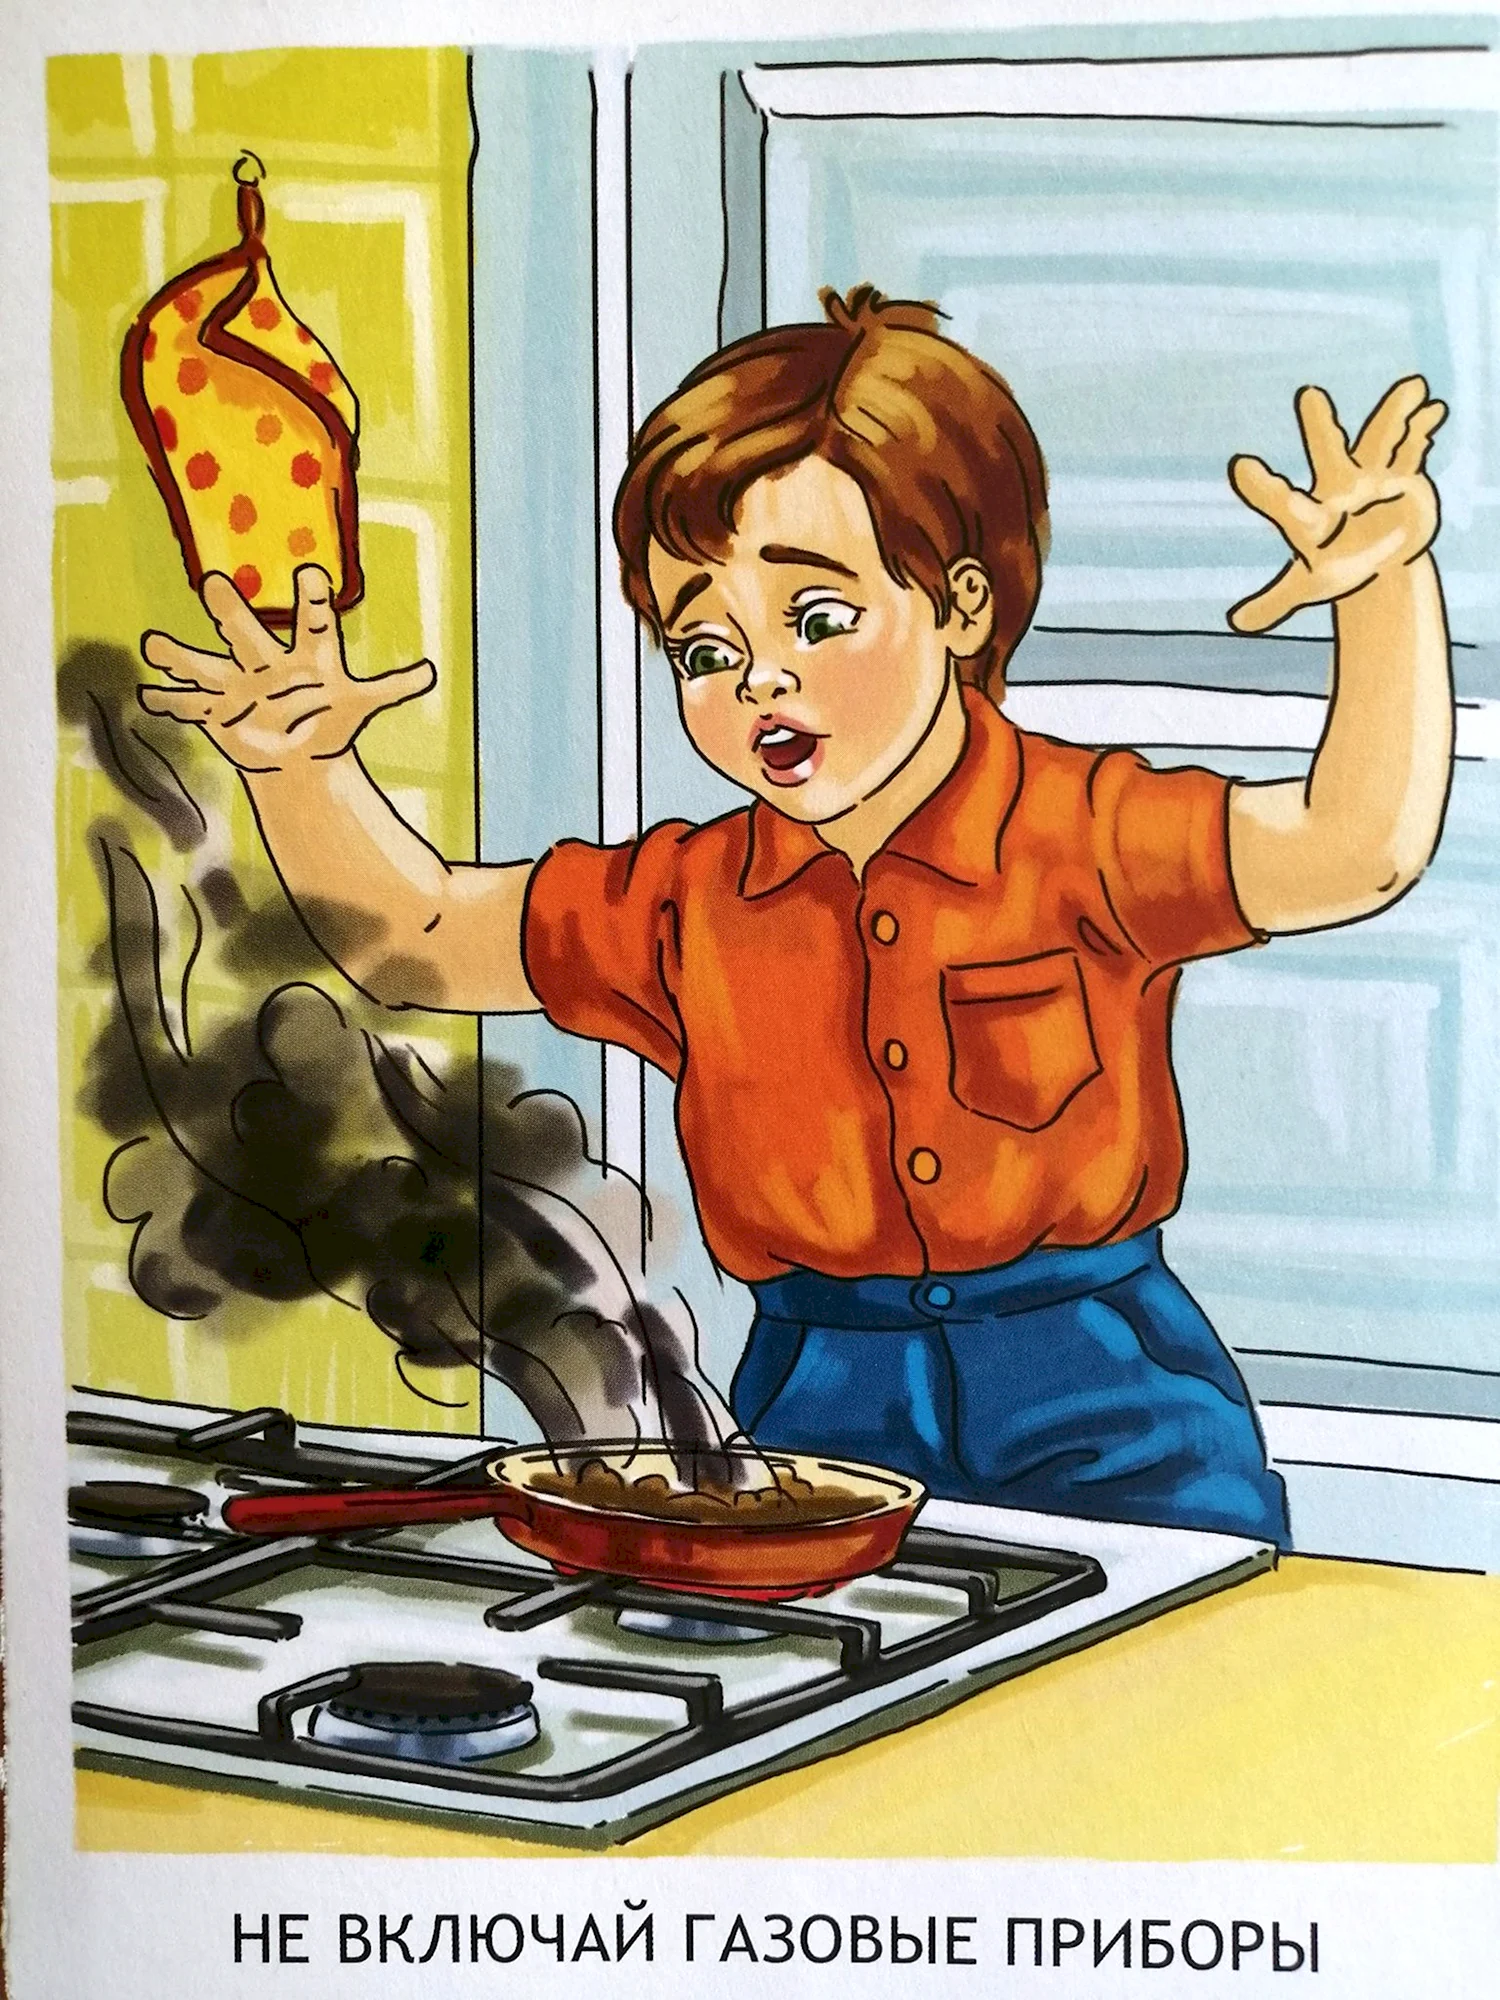 Опасности на кухне для детей